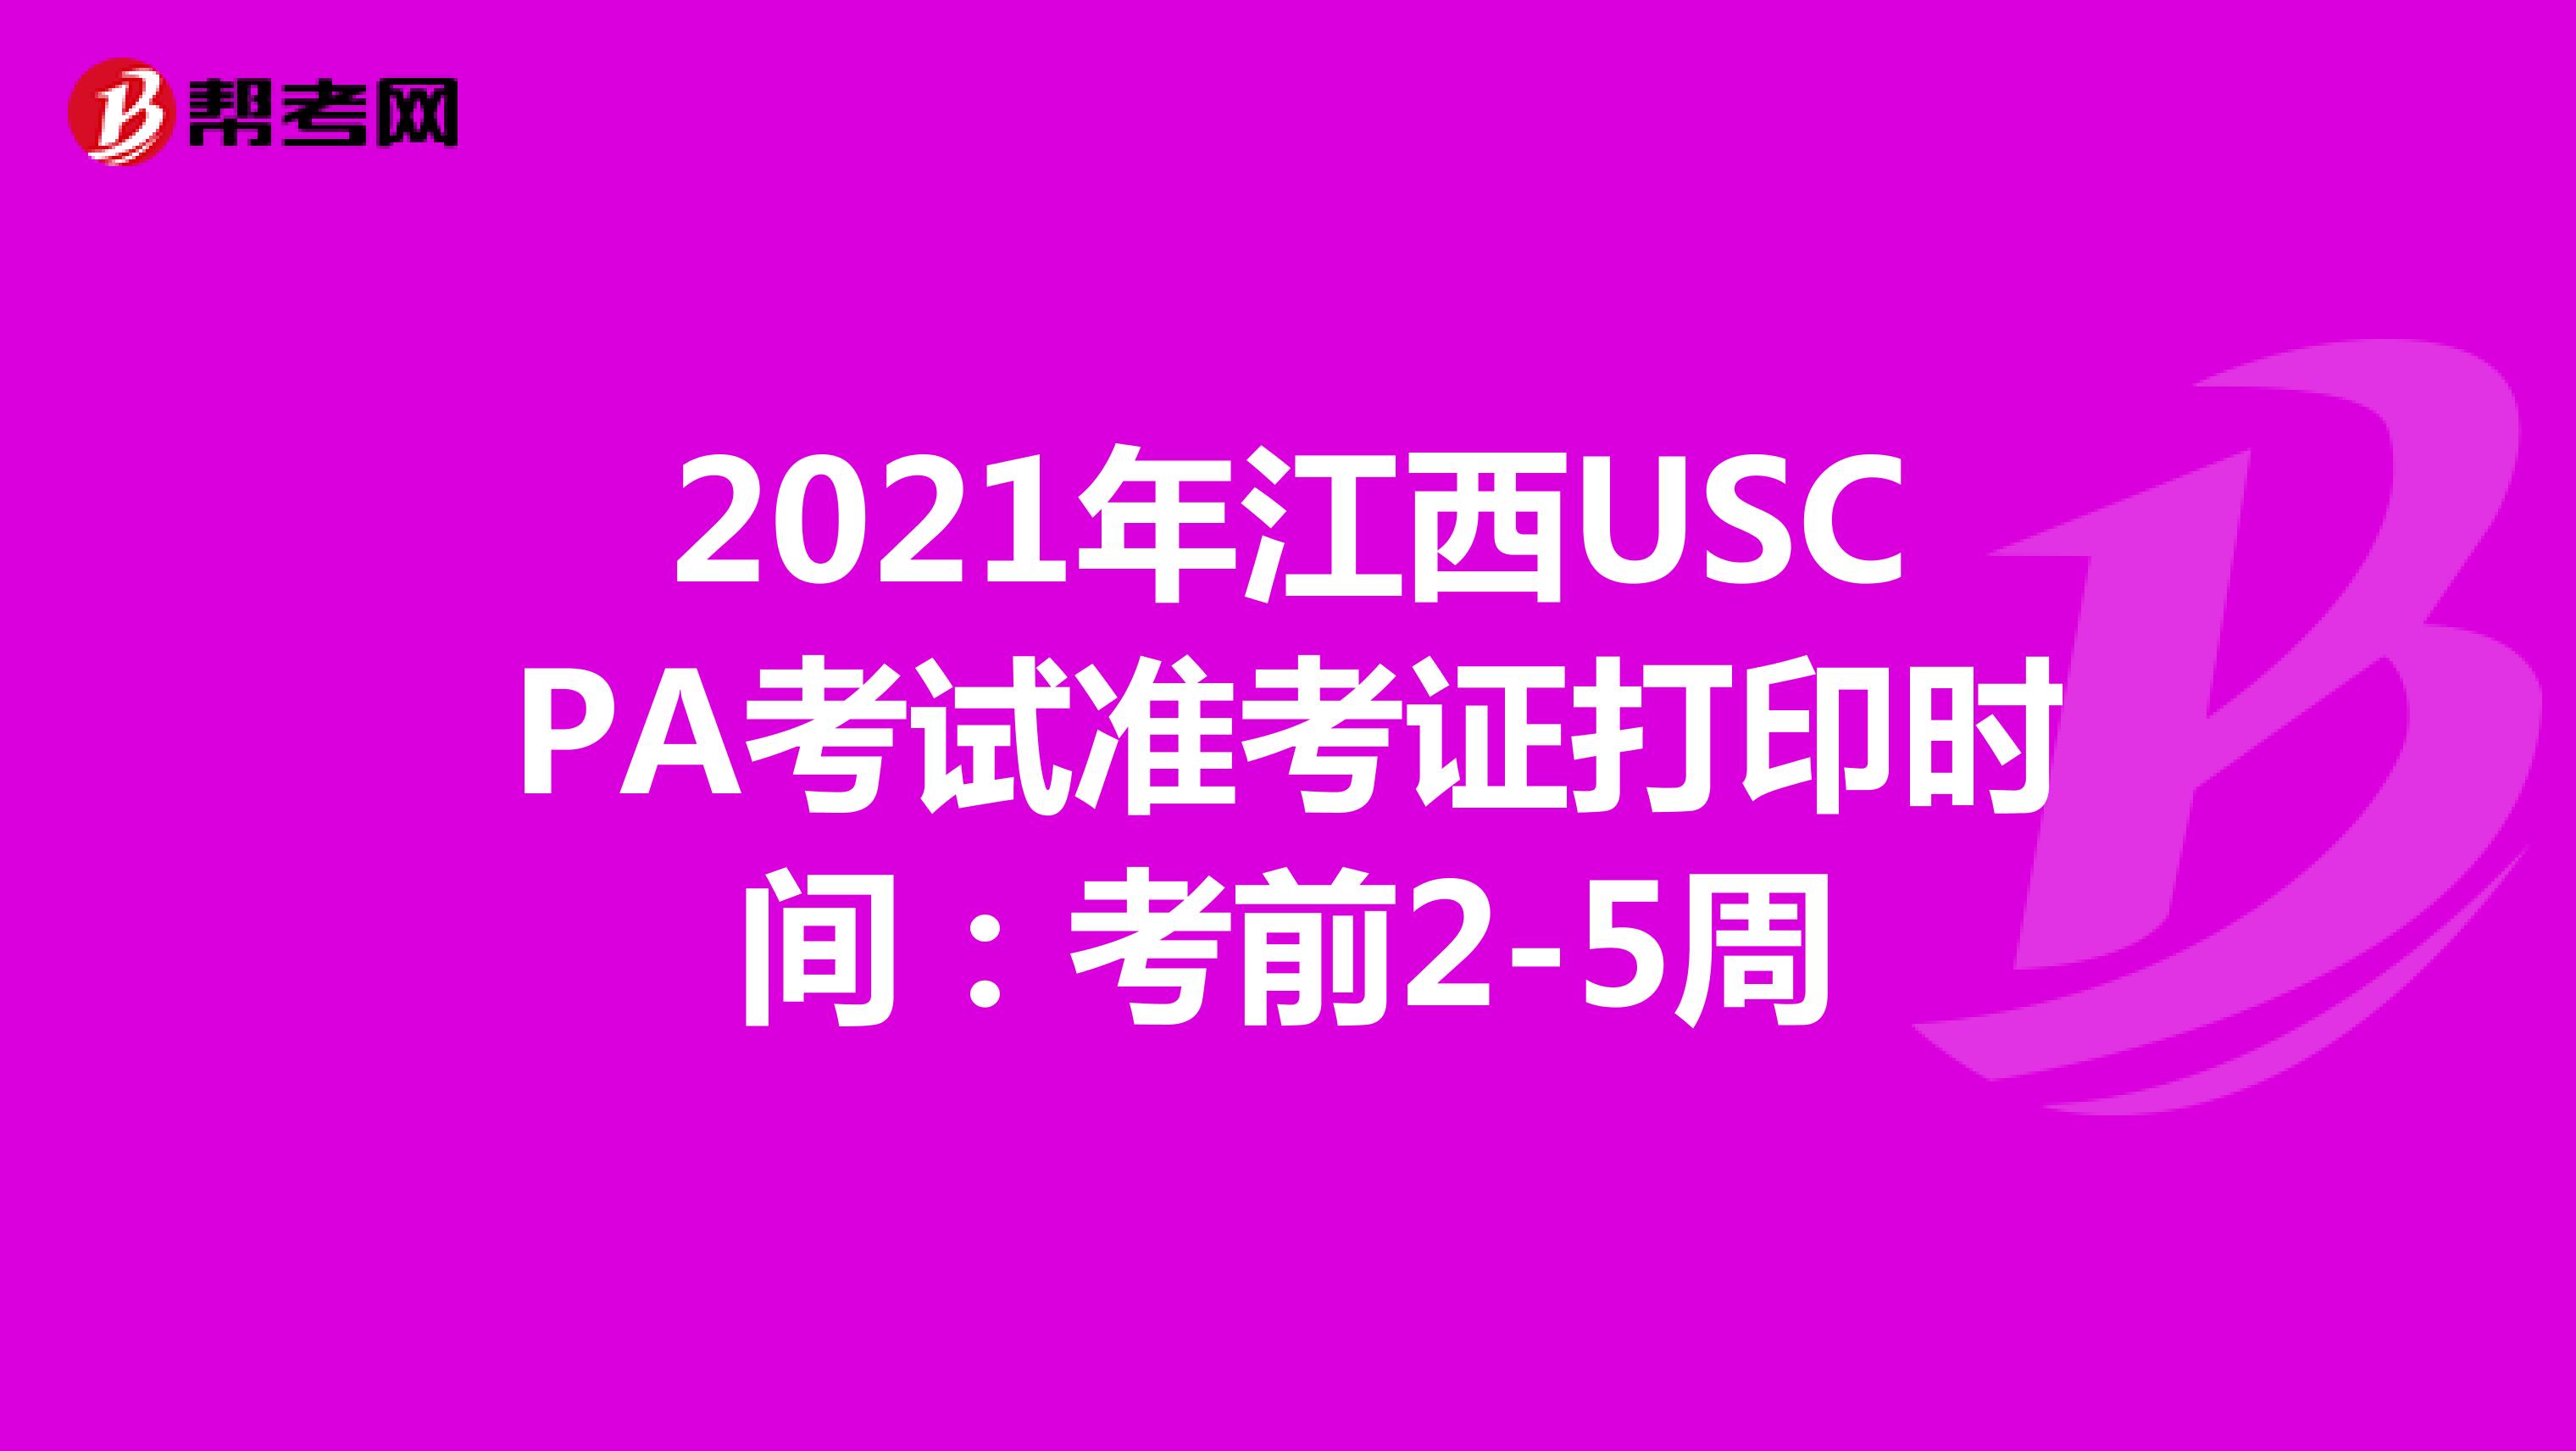 2021年江西USCPA考试准考证打印时间：考前2-5周